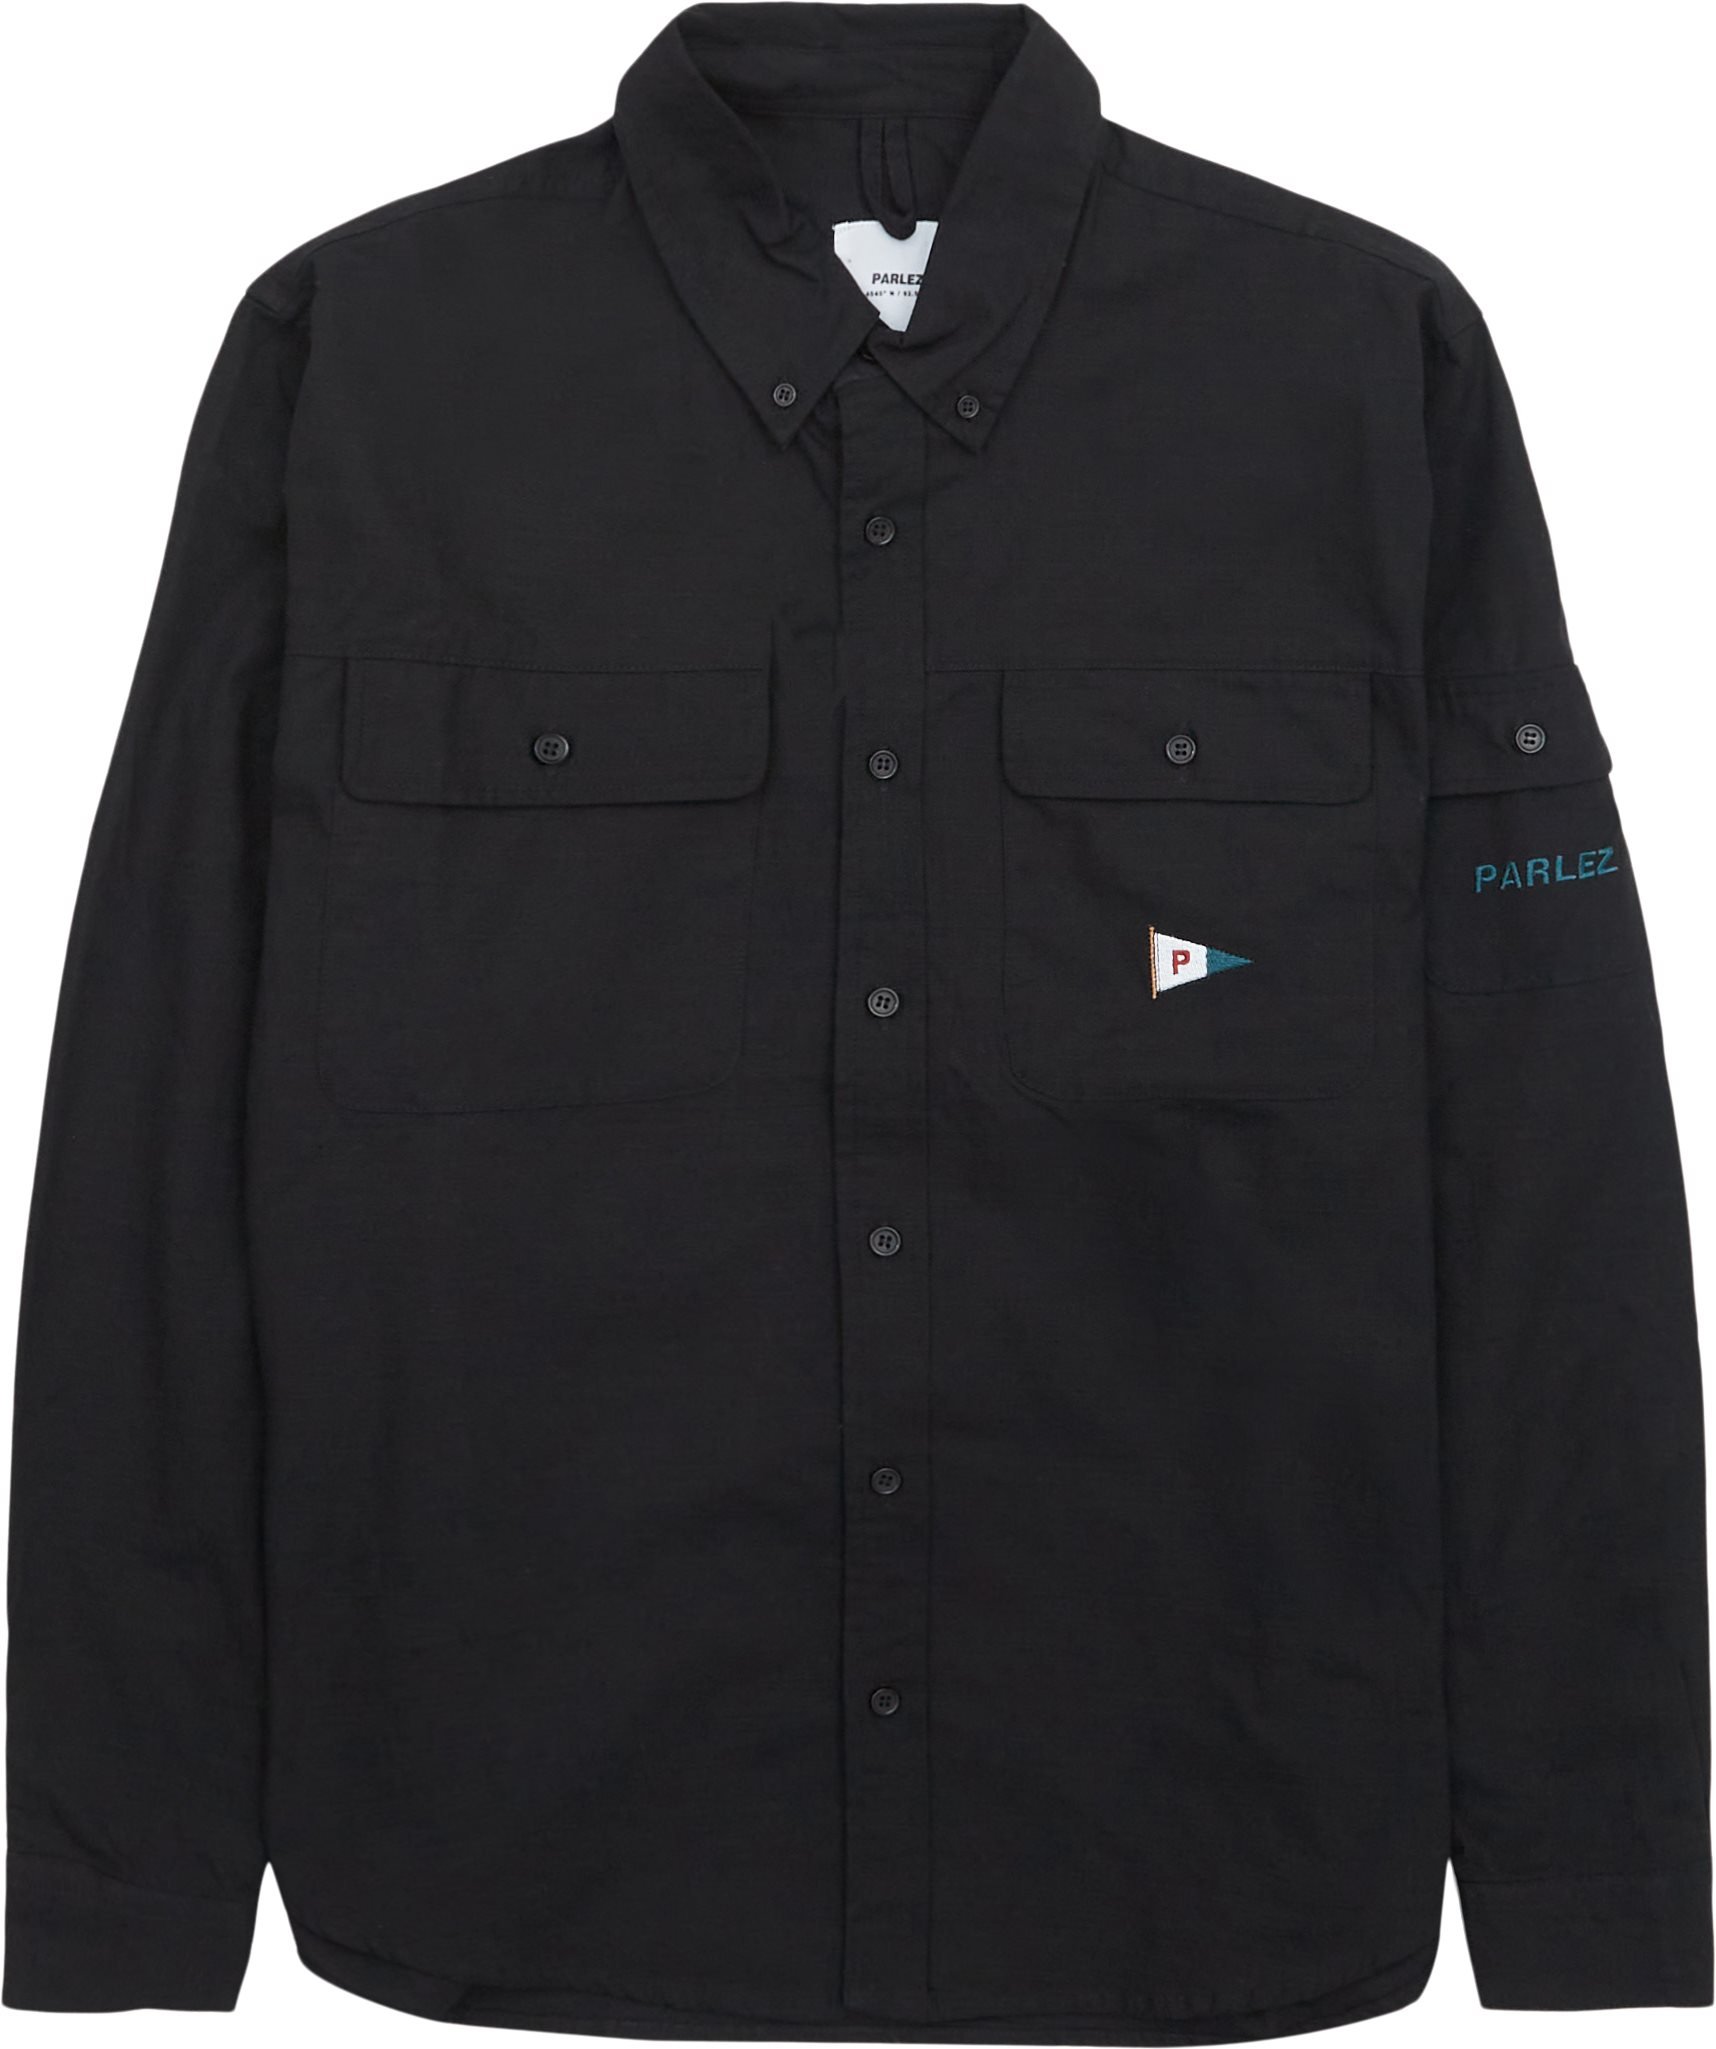 PARLEZ Shirts MASTIC SHIRT Black